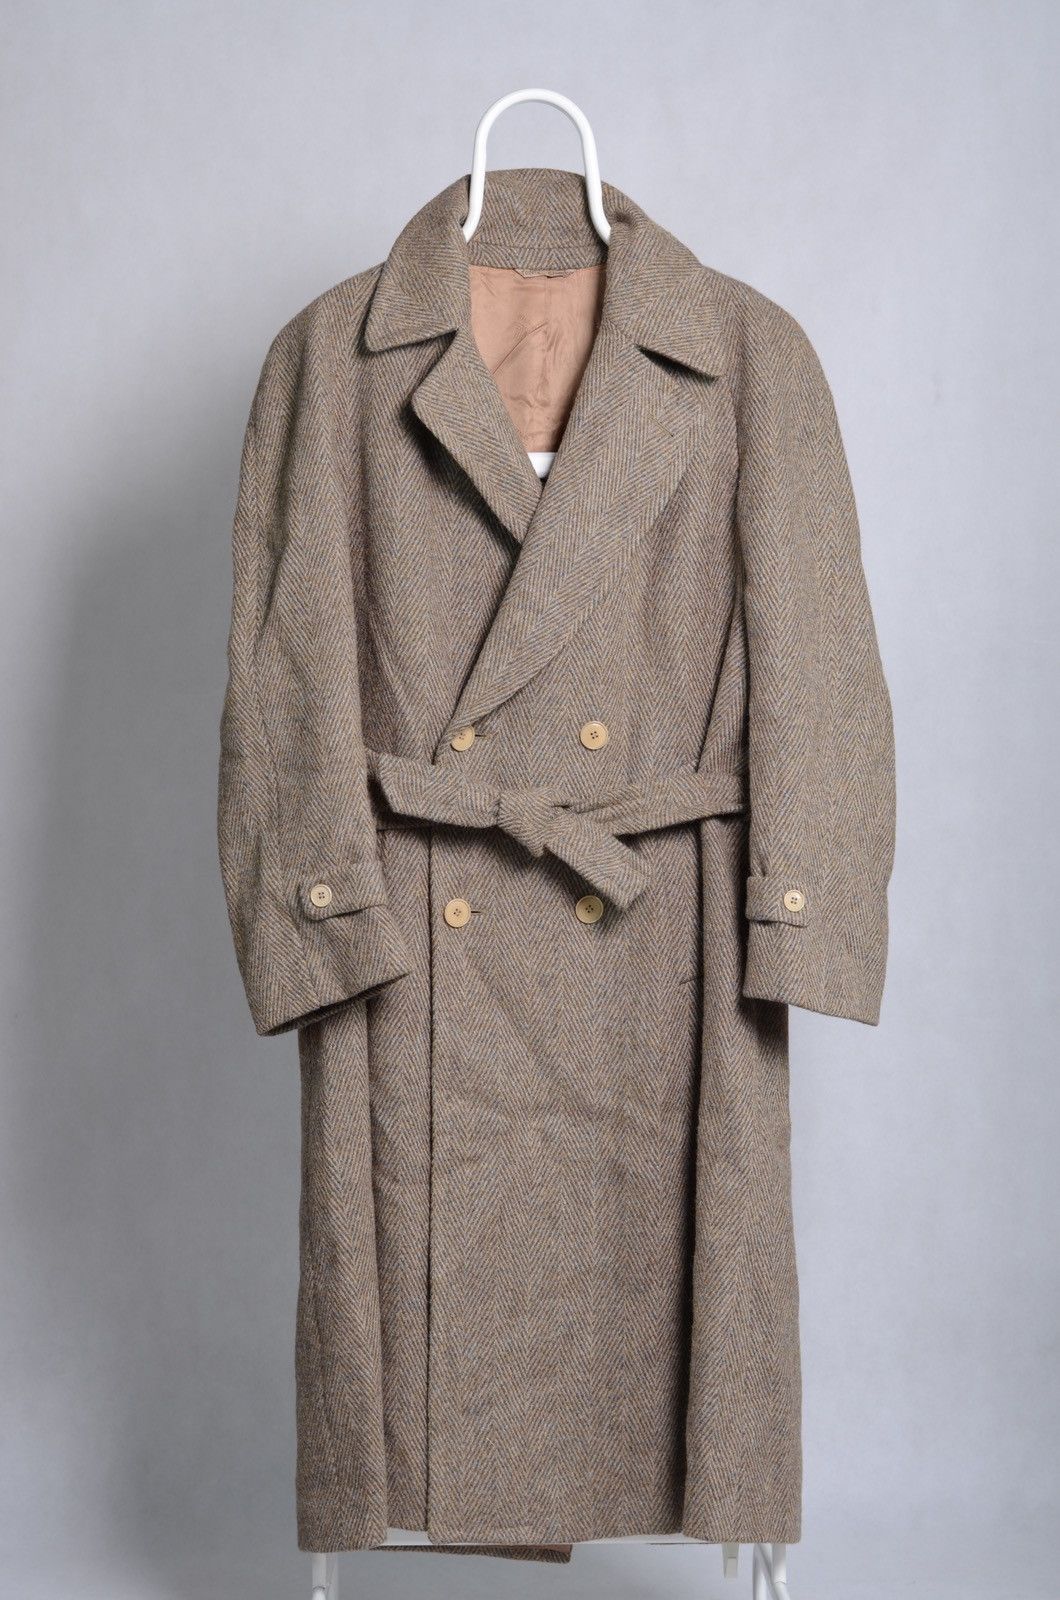 Lanvin LANVIN vintage wool heavy herringbone coat | Grailed